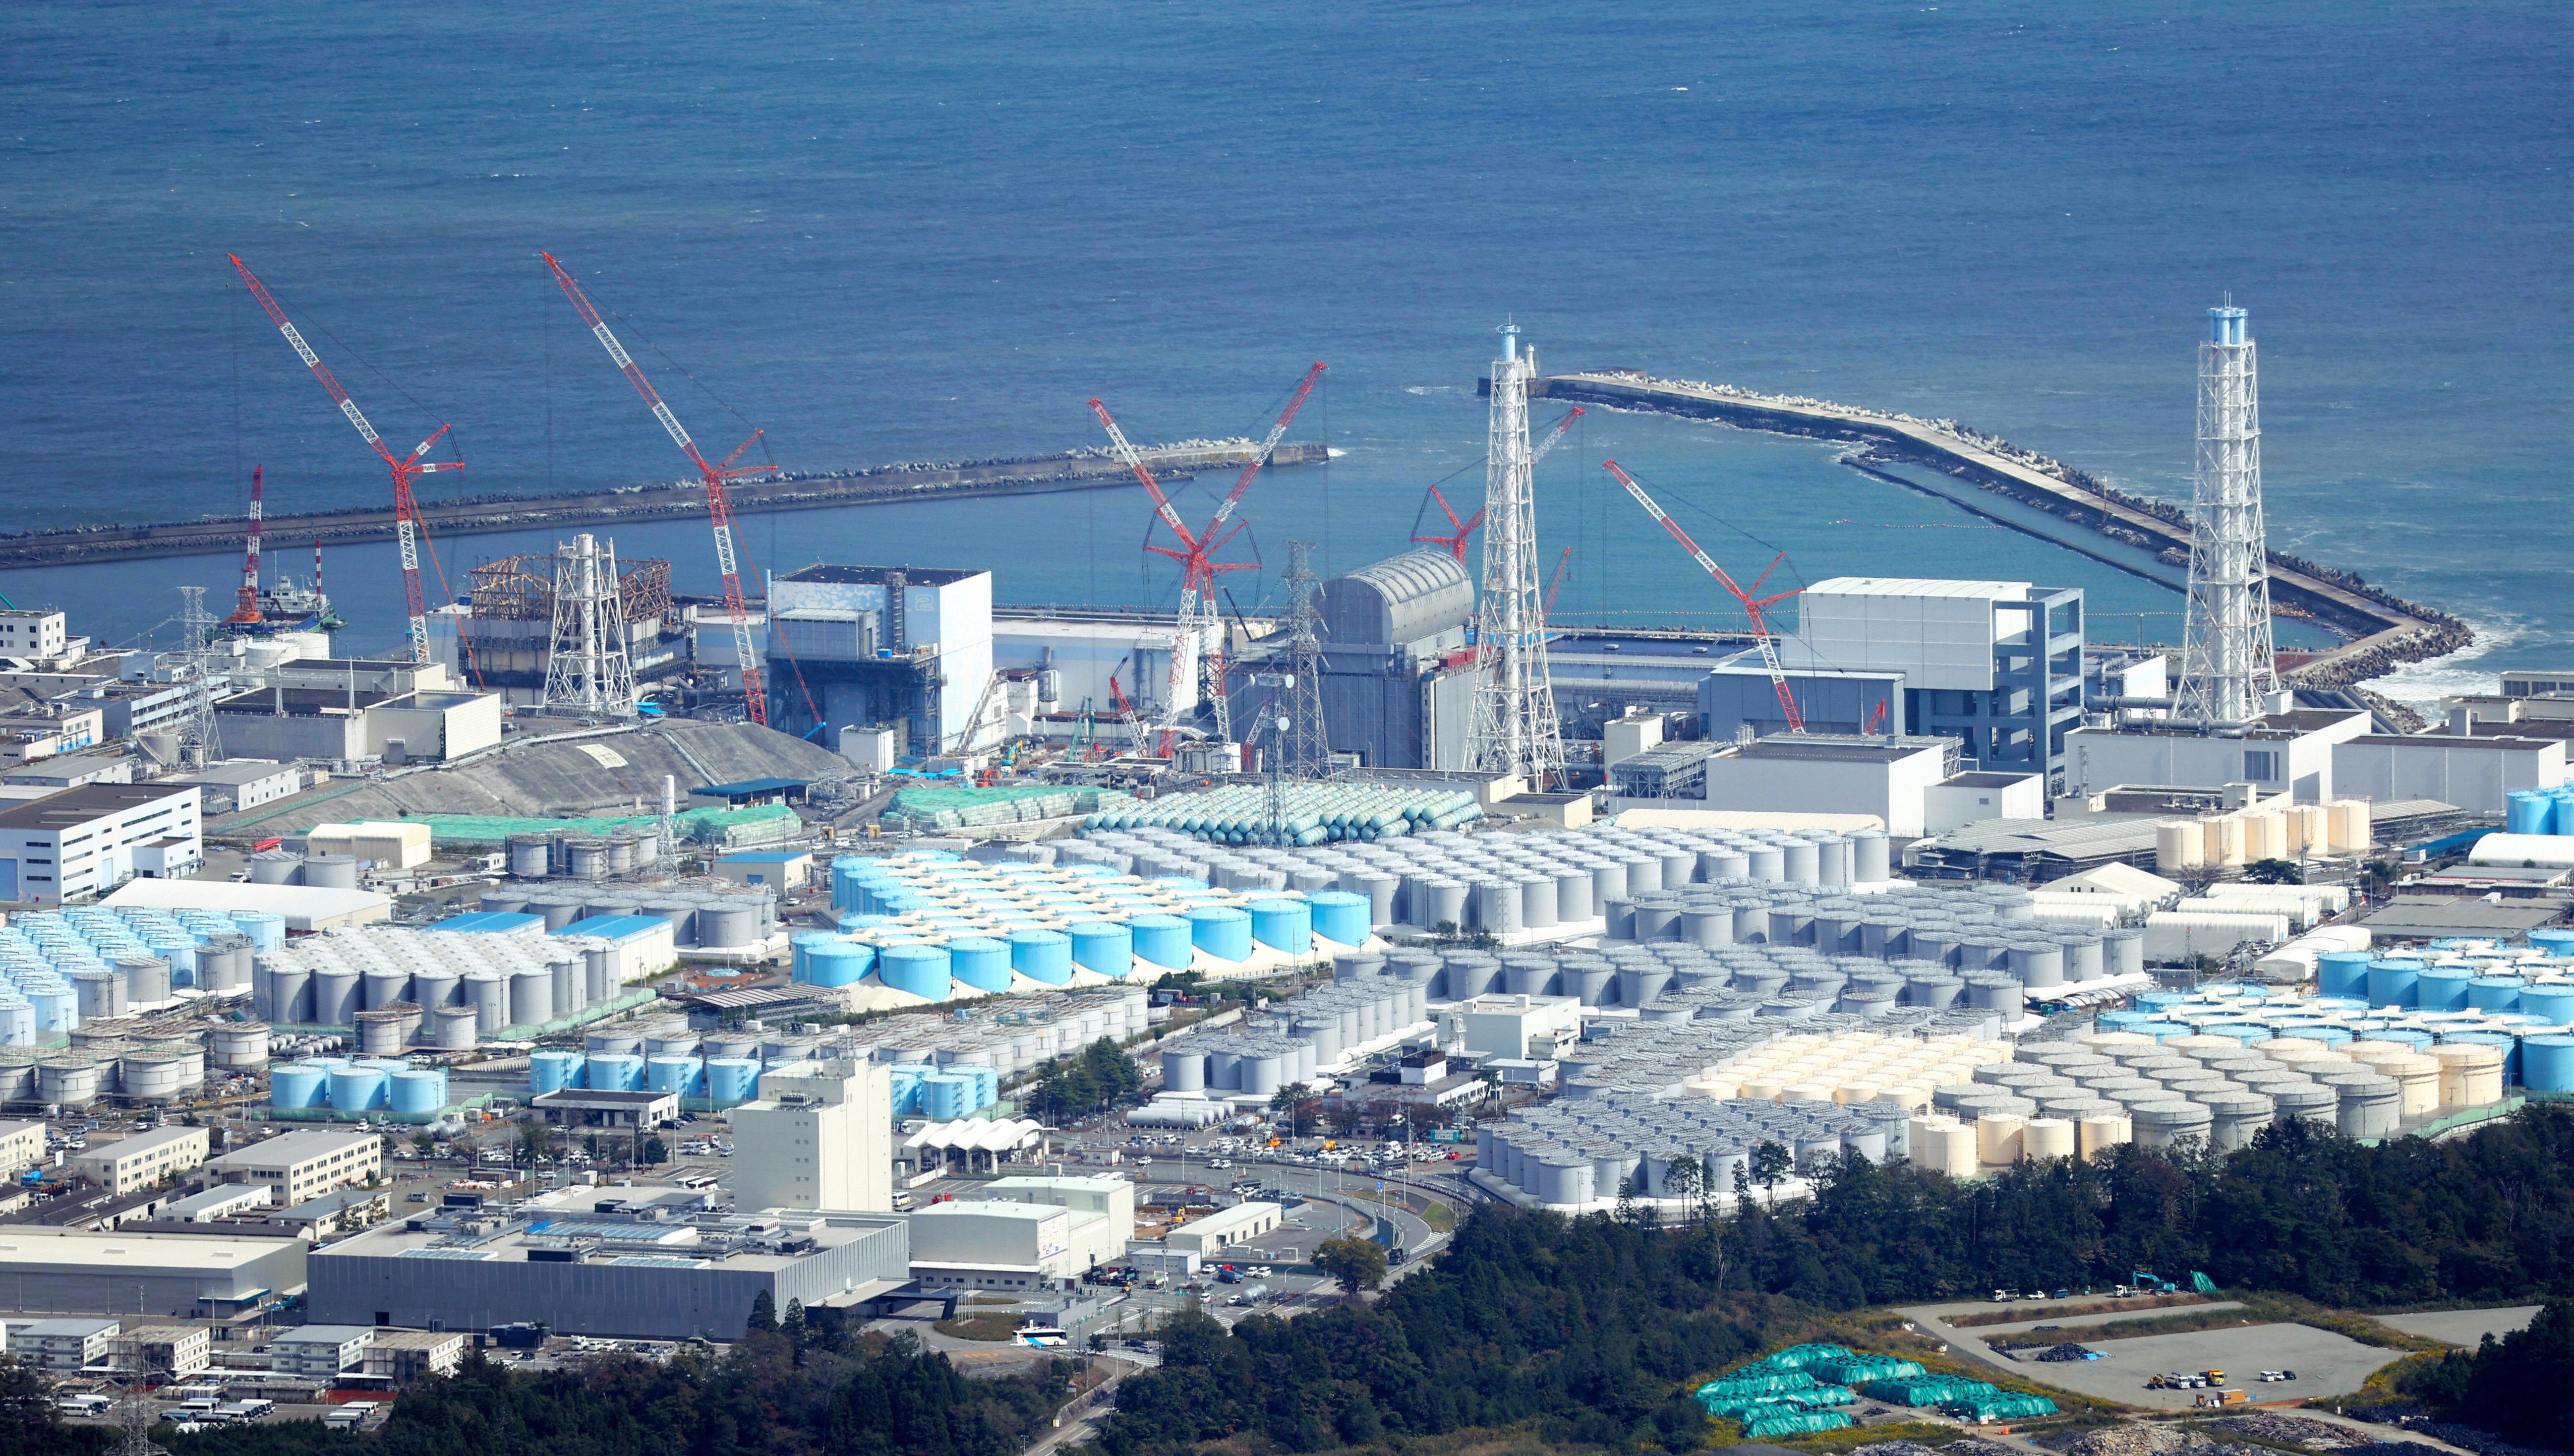 日本福岛第一核电站